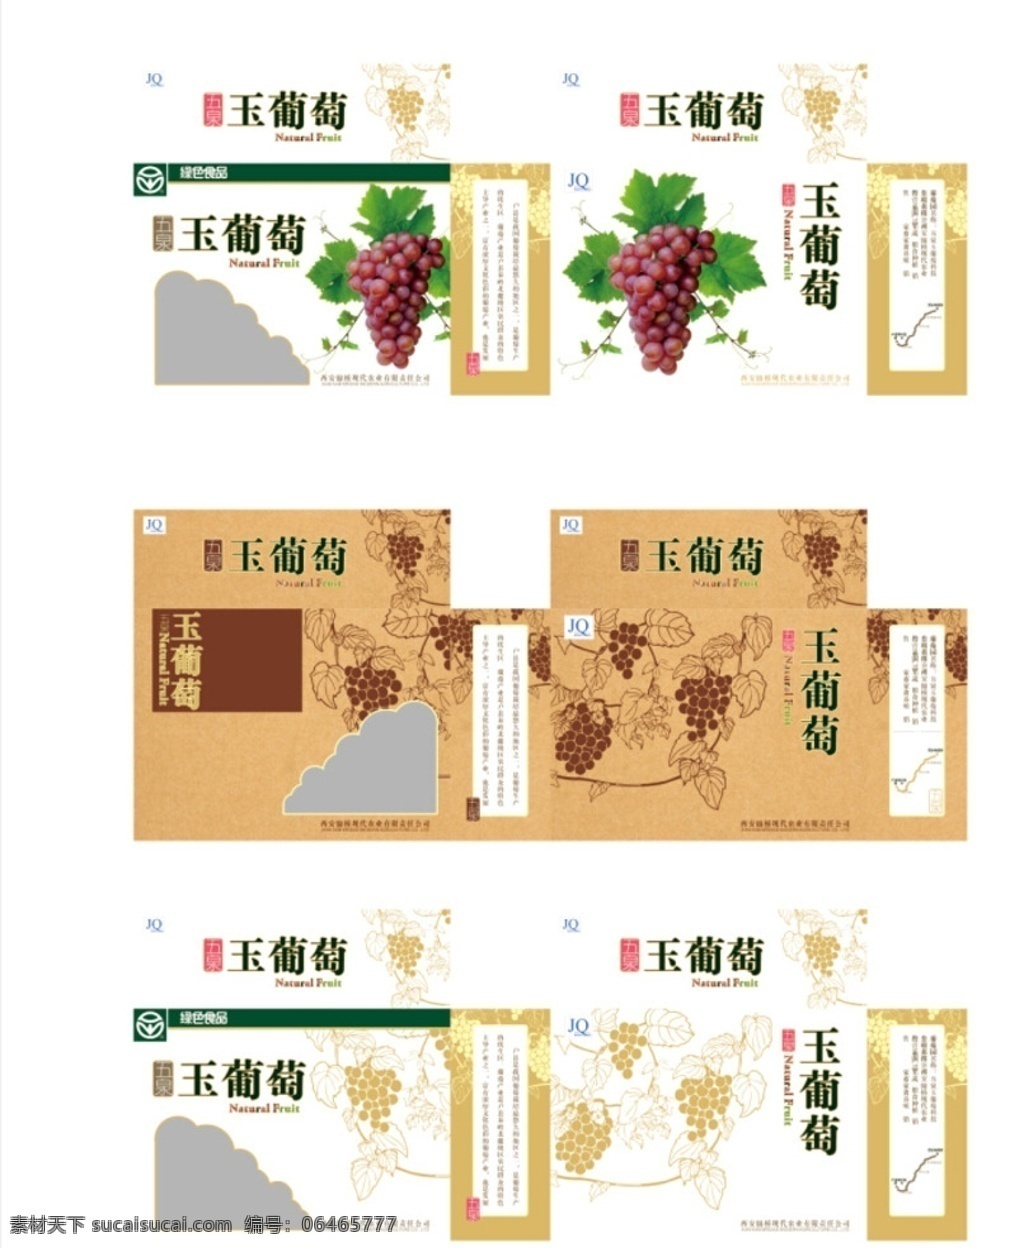 葡萄包装 葡萄 包装 包装设计 盒子 盒子设计